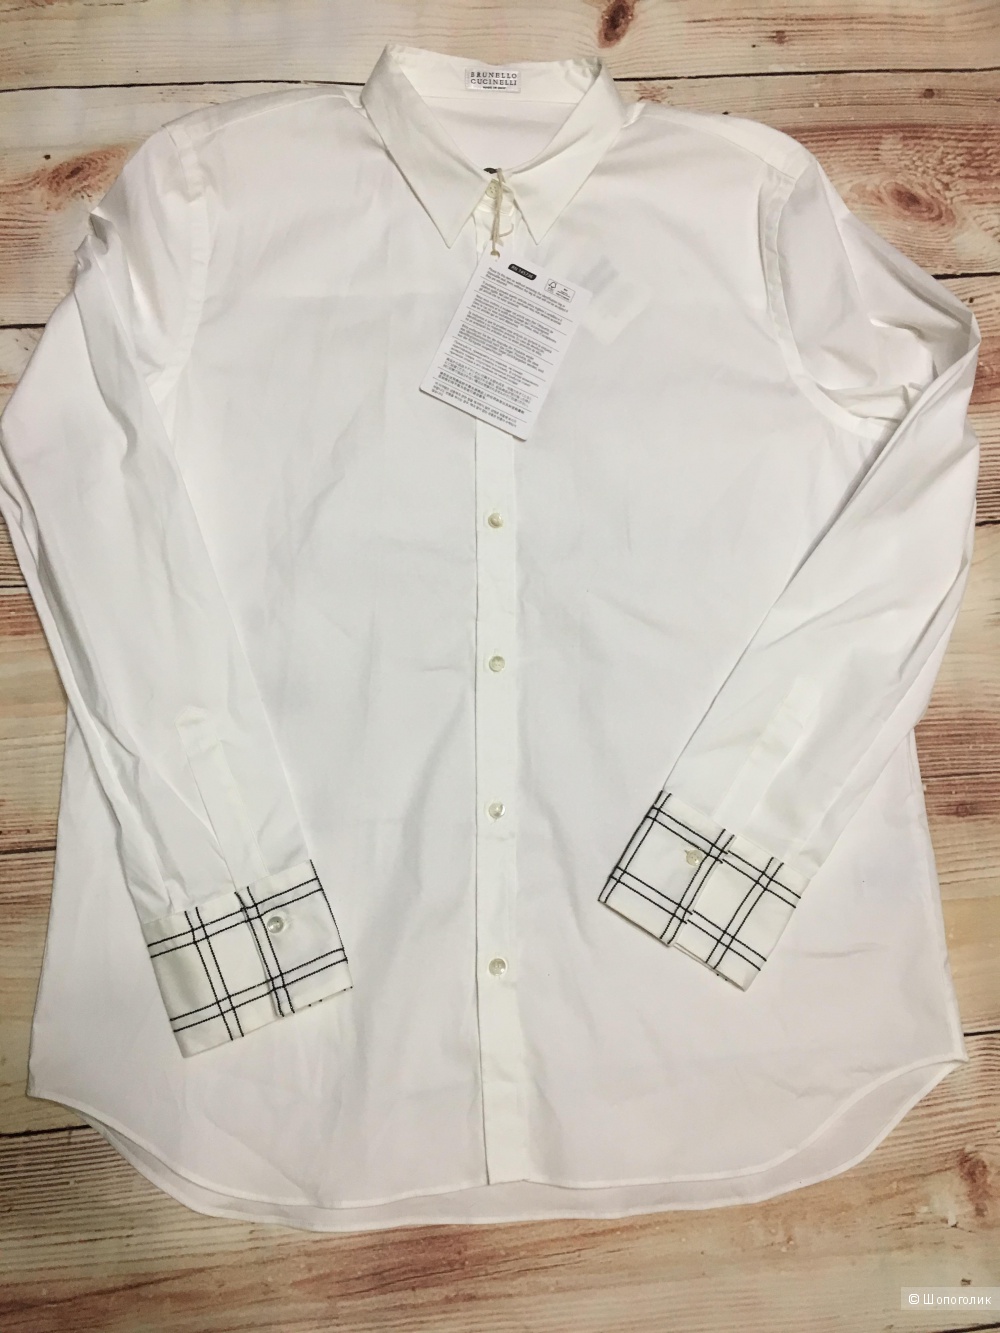 Блузка-рубашка BRUNELLO CUCINELLI, размер XL. На рос. 50+